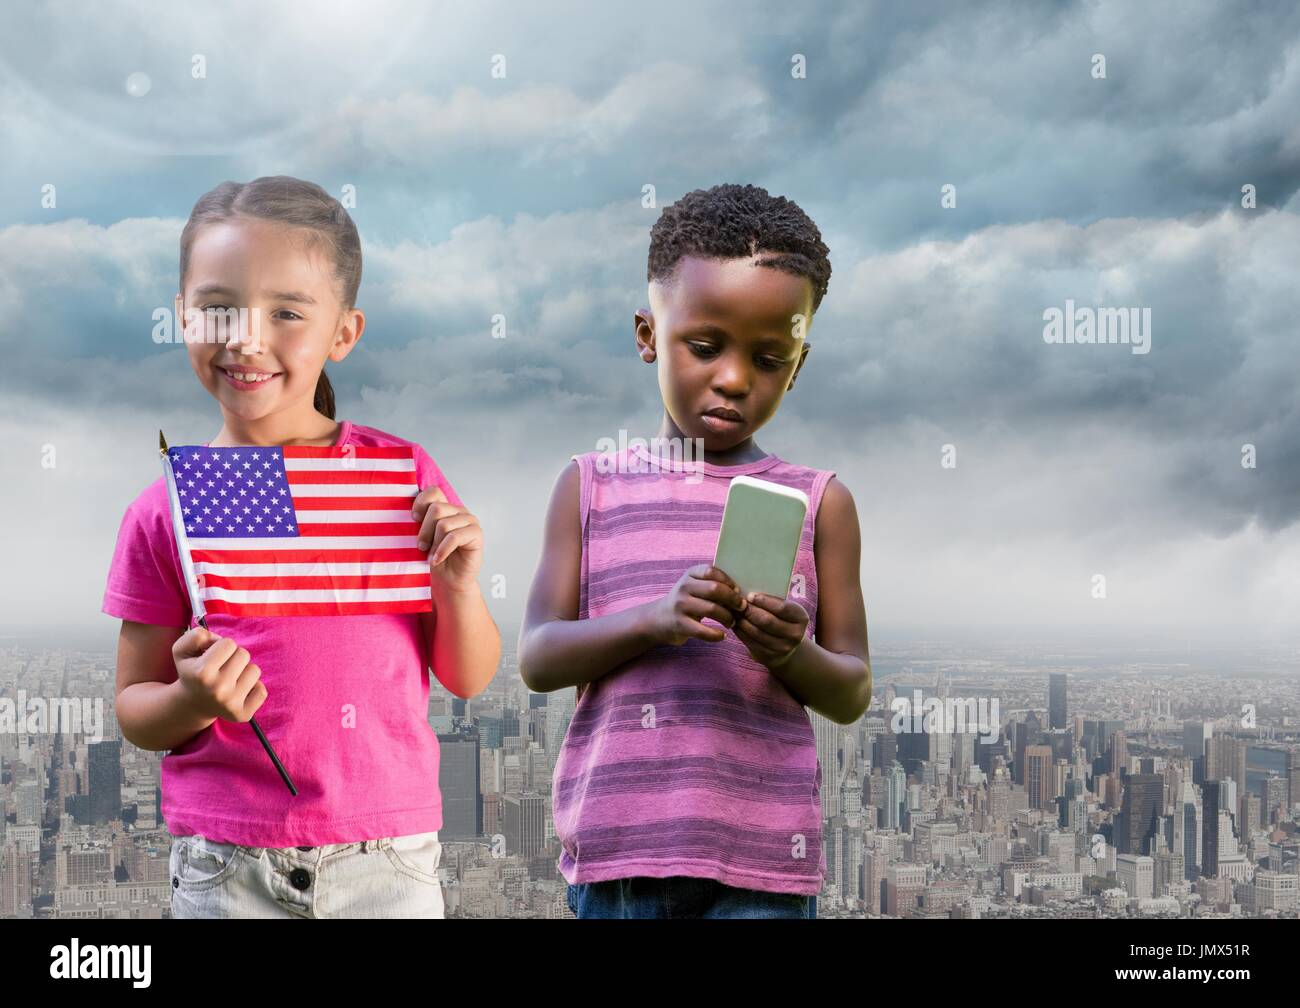 Composito Digitale dei bambini azienda bandiera americana e telefono con lo sfondo della città Foto Stock